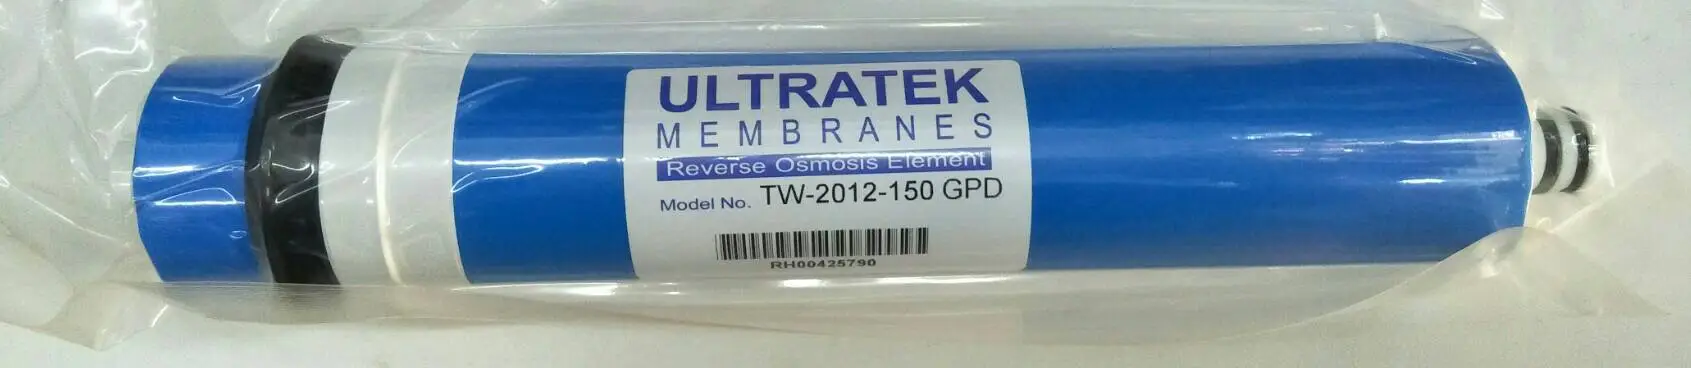 ไส้กรองน้ำ ไส้กรองเมมเบรน ULTRATEK 150 GPD membrane r.o. ro. RO Membrane ของ เครื่องกรองน้ำ ขนาด 12 นิ้ว น้ำ ไส้กรอง